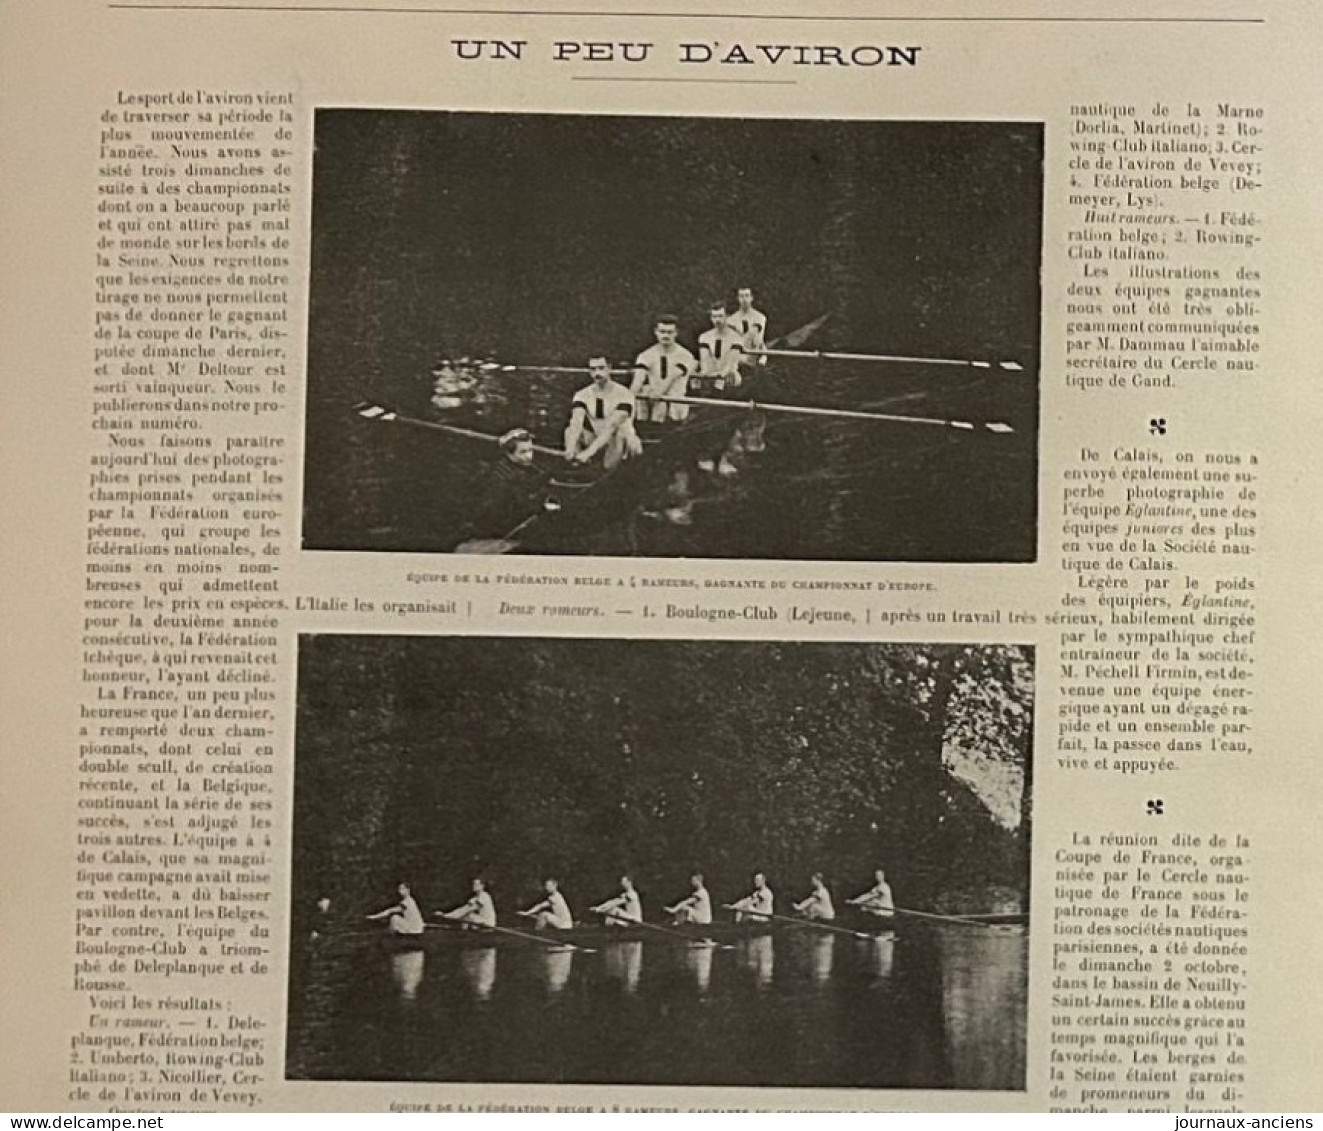 1898 AVIRON - FEDERATION BELGE CHAMPIONNAT D'EUROPE - SOCIETE NAUTIQUE DE CALAIS - Revue Sportive LA VIE AU GRAND AIR - Magazines - Before 1900